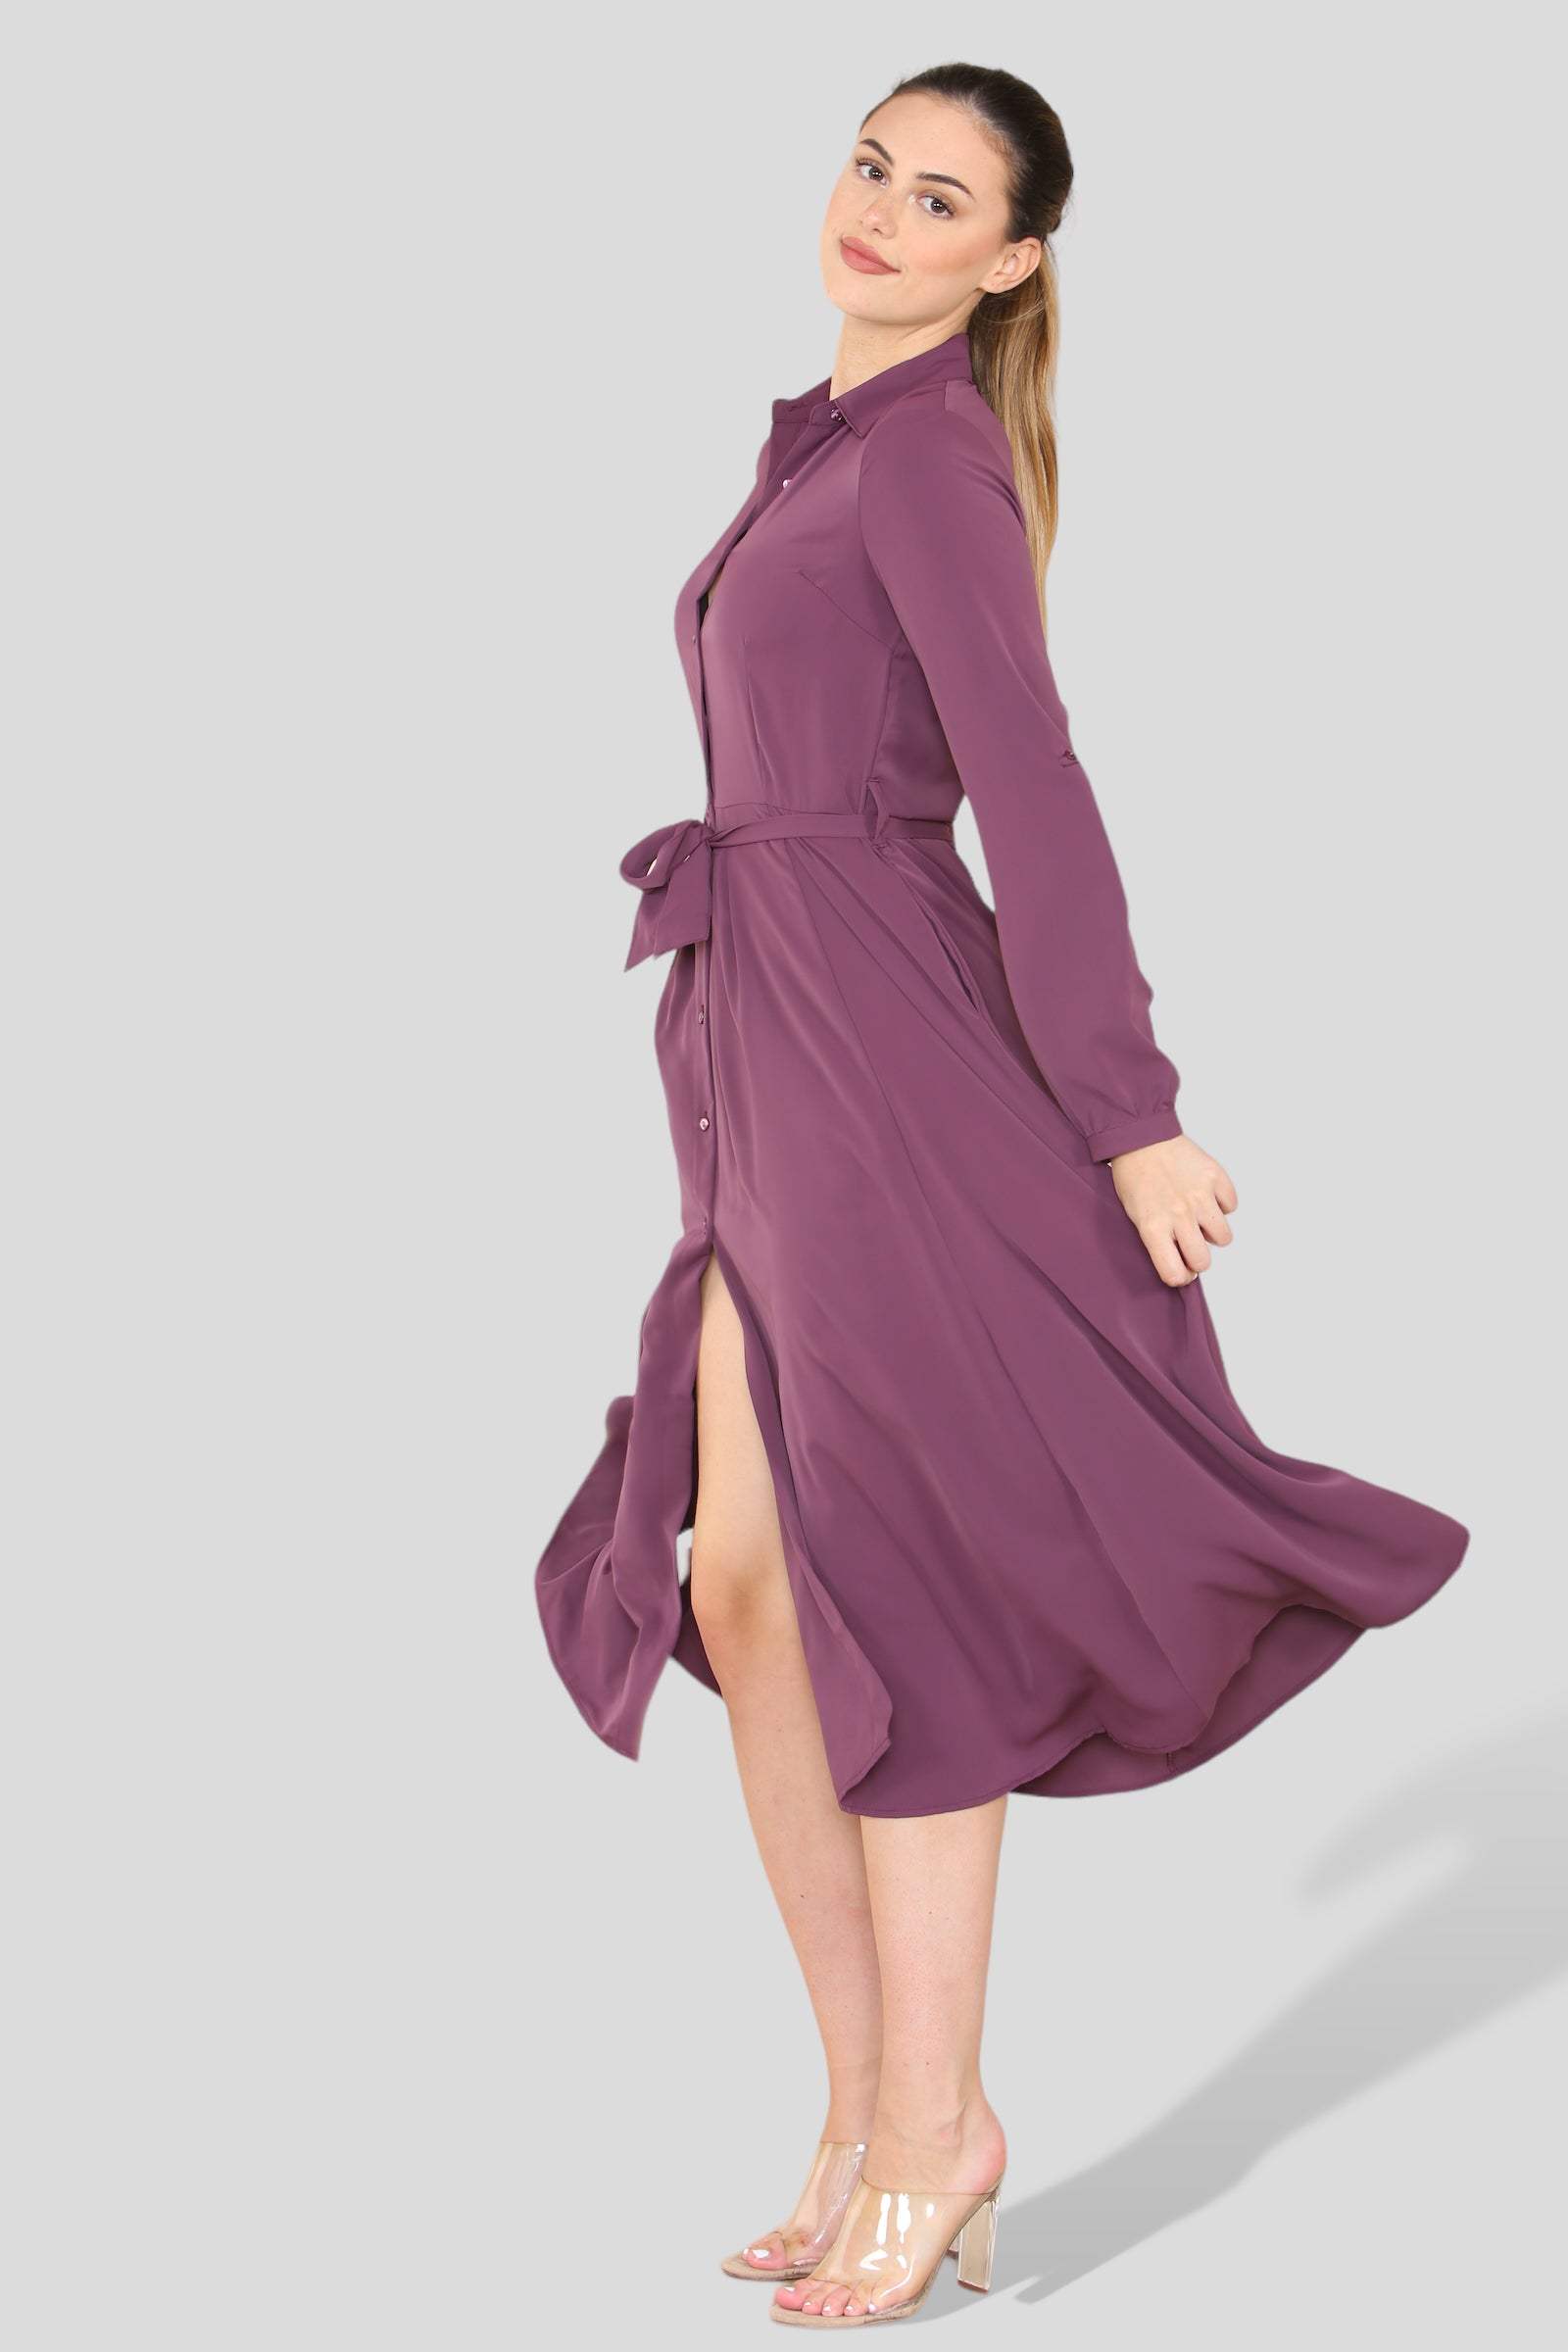 Love Sunshine Plain Purple Long Sleeve Midaxi Shirt Dress Brunch Dress Casual Dress Dress with Pockets Everyday Dress Long Sleeve Dress LS-2037 Wedding Guest Dress Workwear Dress